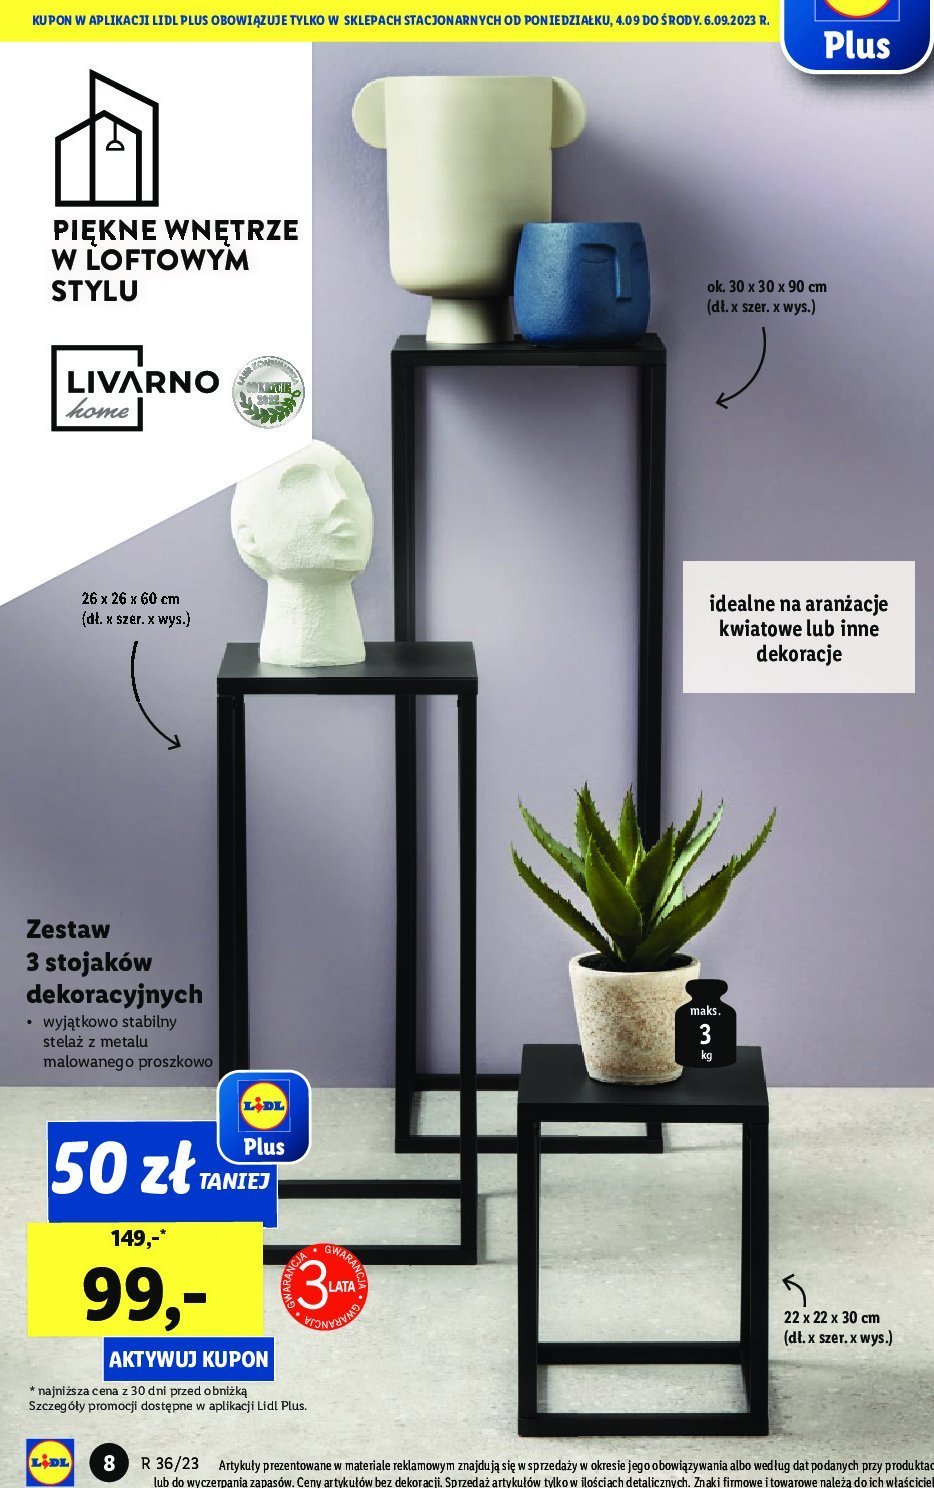 Zestaw stojaków dekoracyjnych LIVARNO - - ofert Brak promocje - HOME Blix.pl sklep cena - - | opinie